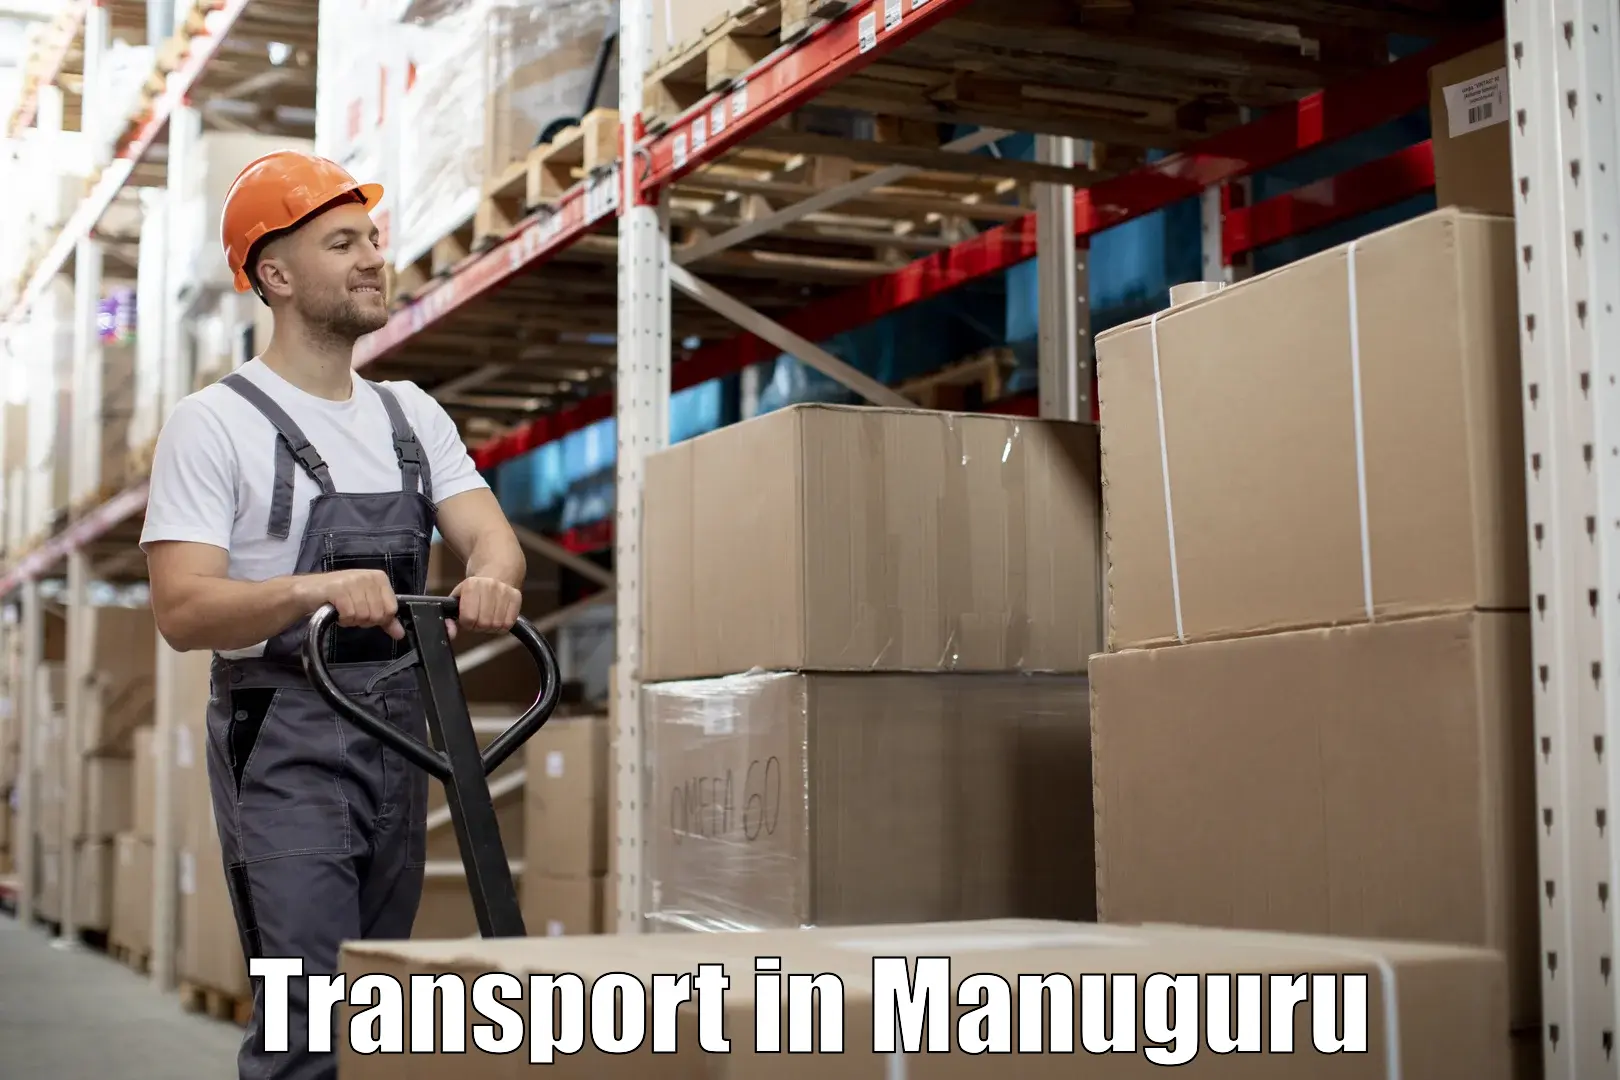 Container transport service in Manuguru